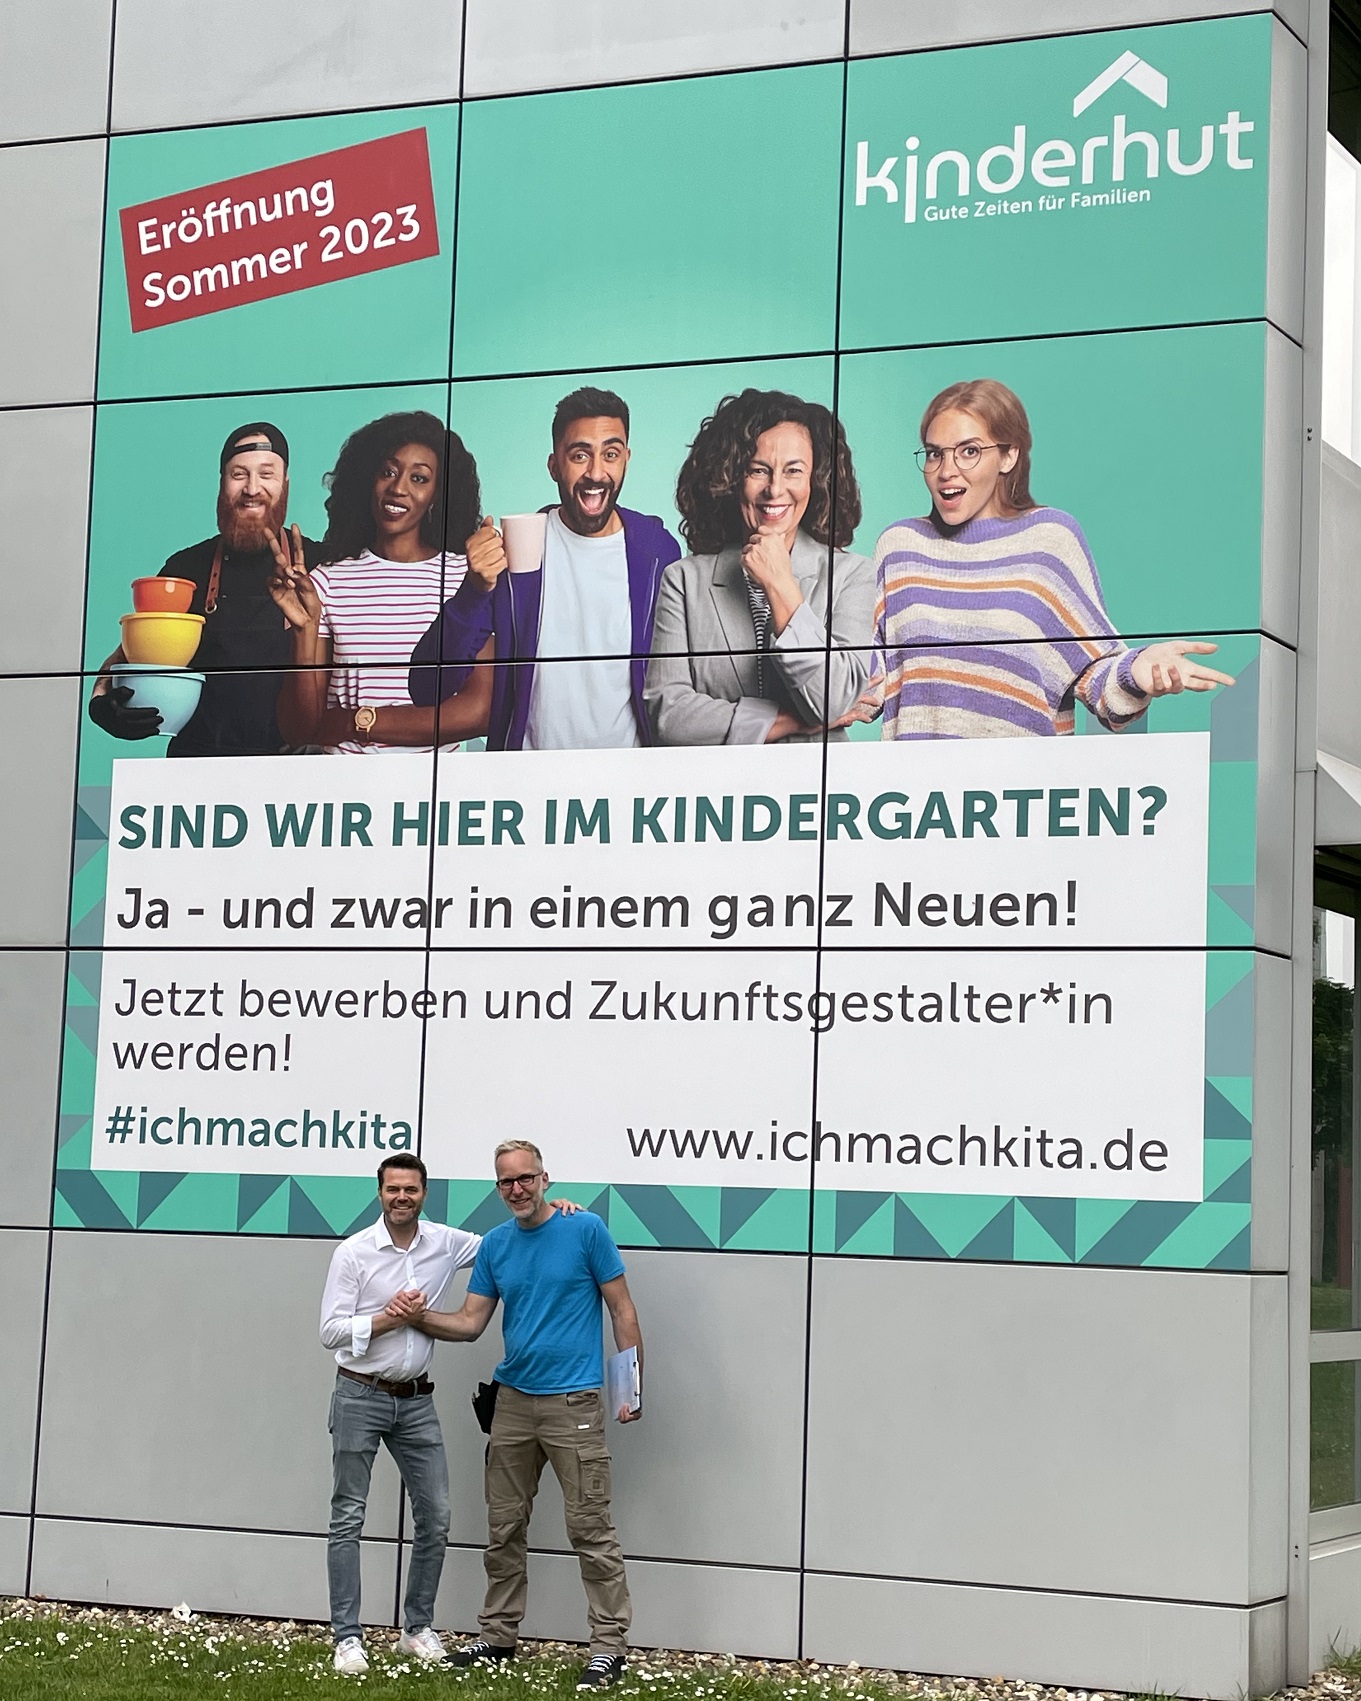 Umbau für fünfte Kinderhut-Kita in Düsseldorf läuft wie geplant